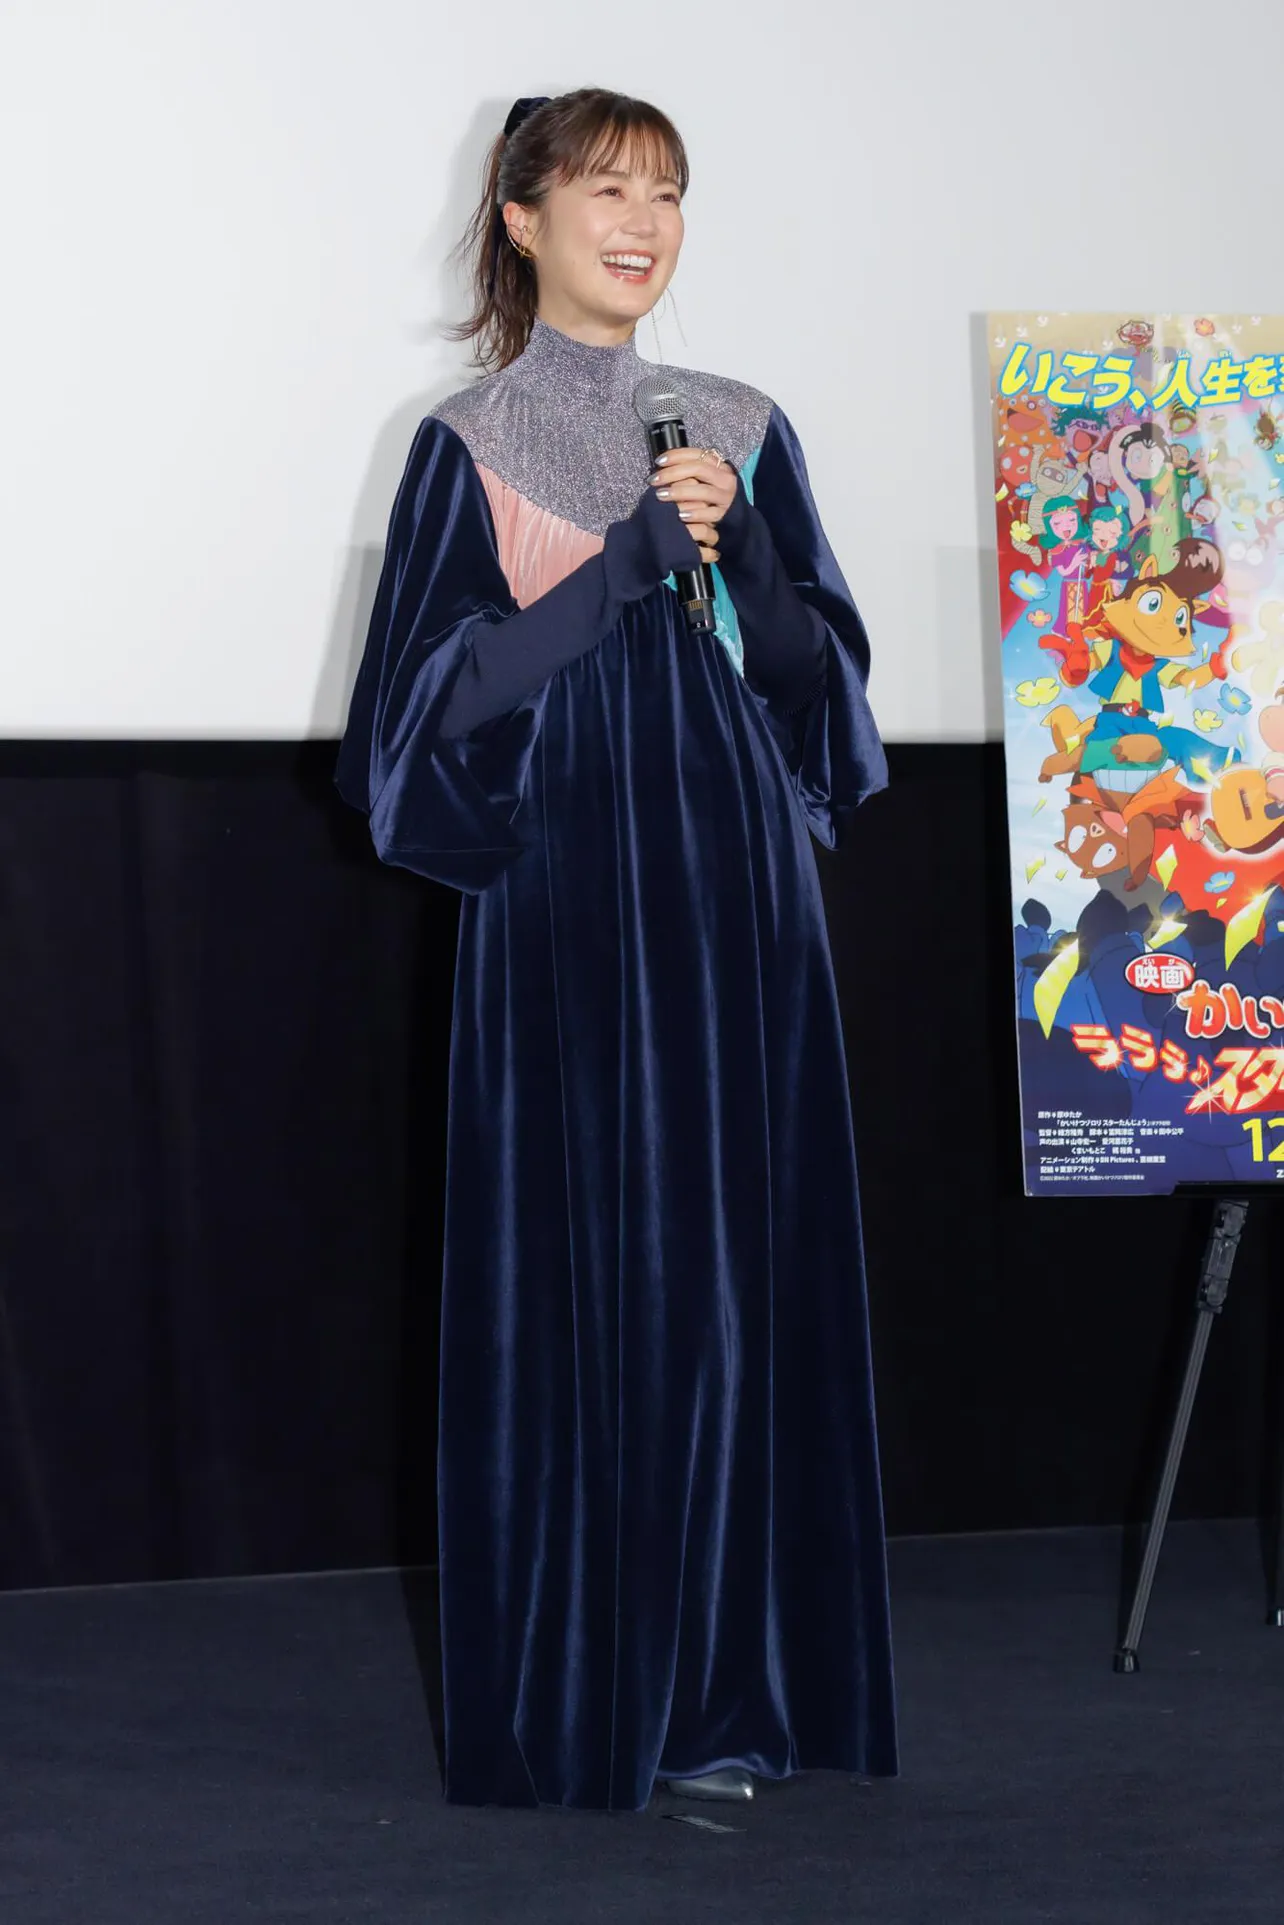 【写真】生田絵梨花、ネイビーのロングドレスでプレミア上映会に出席